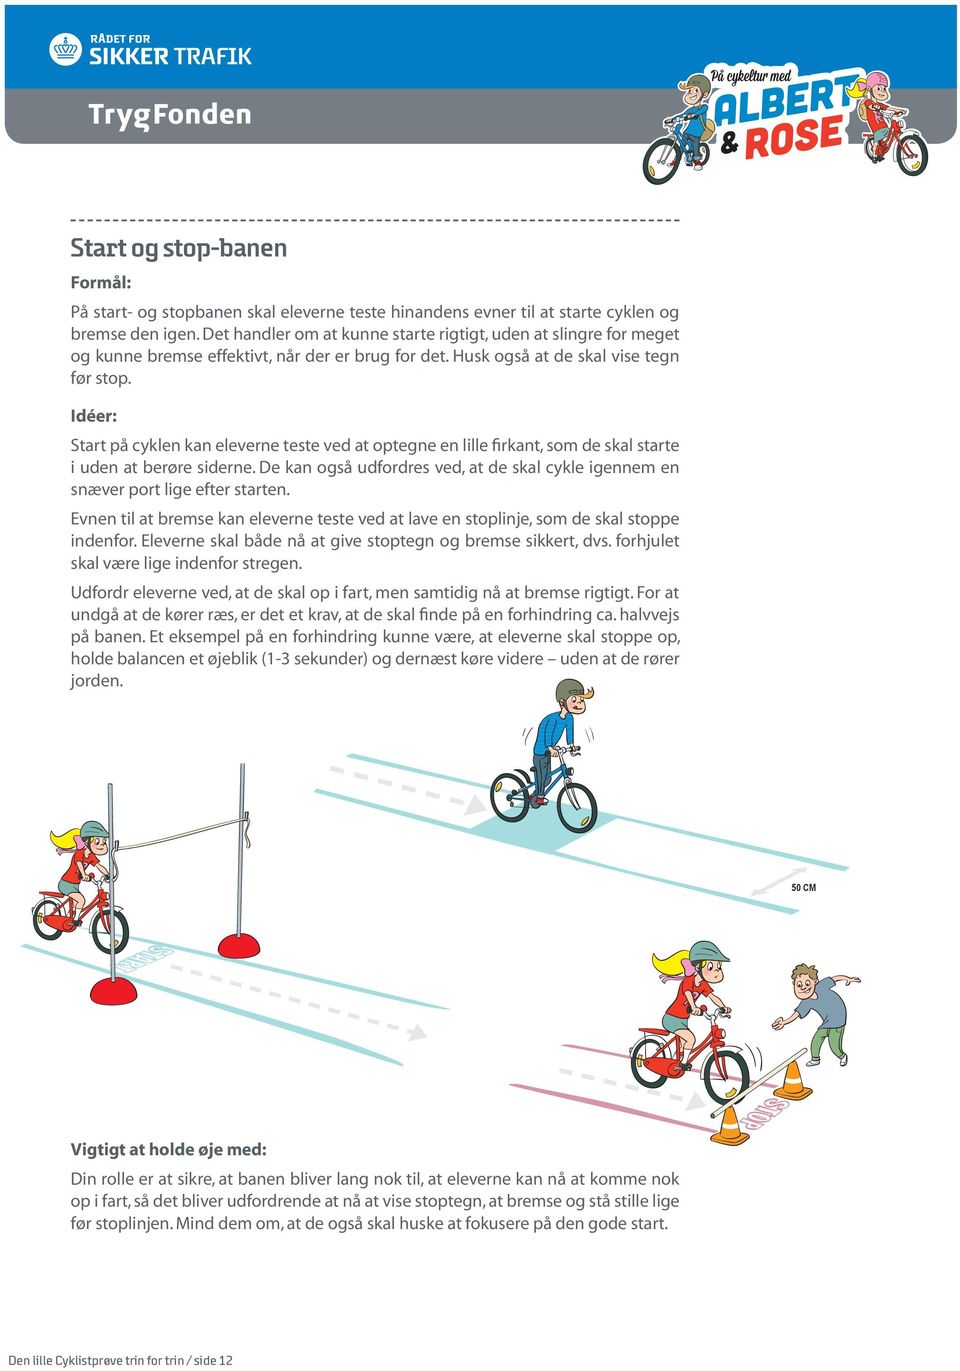 Idéer: Start på cyklen kan eleverne teste ved at optegne en lille firkant, som de skal starte i uden at berøre siderne.